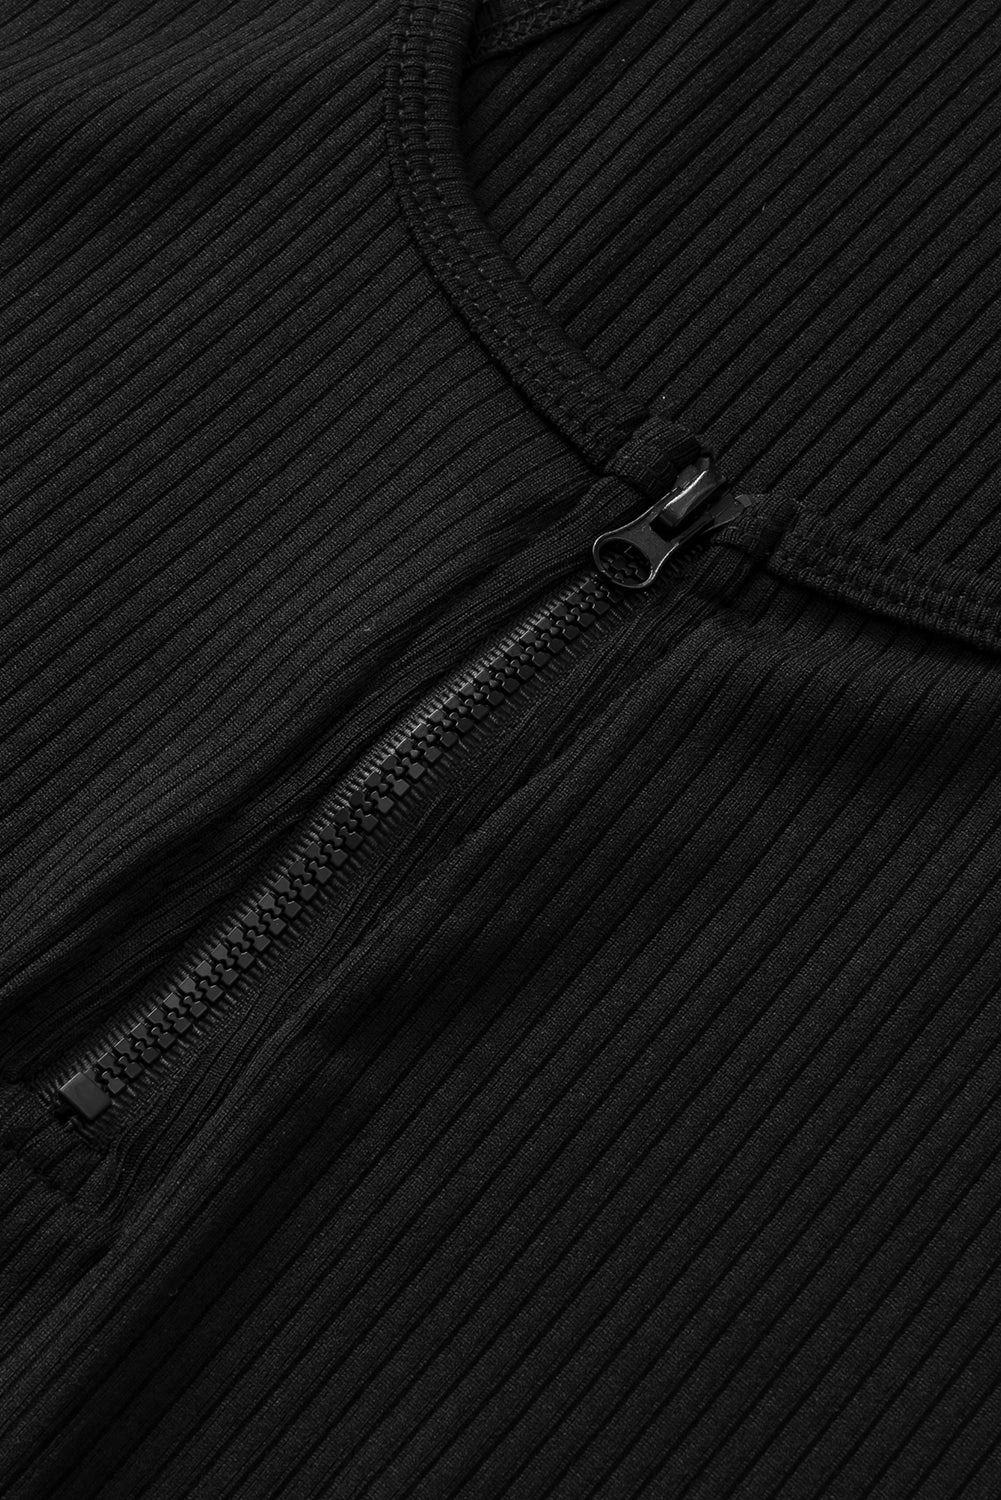 Crna rebrasta majica s patentnim zatvaračem s prednje strane veće veličine